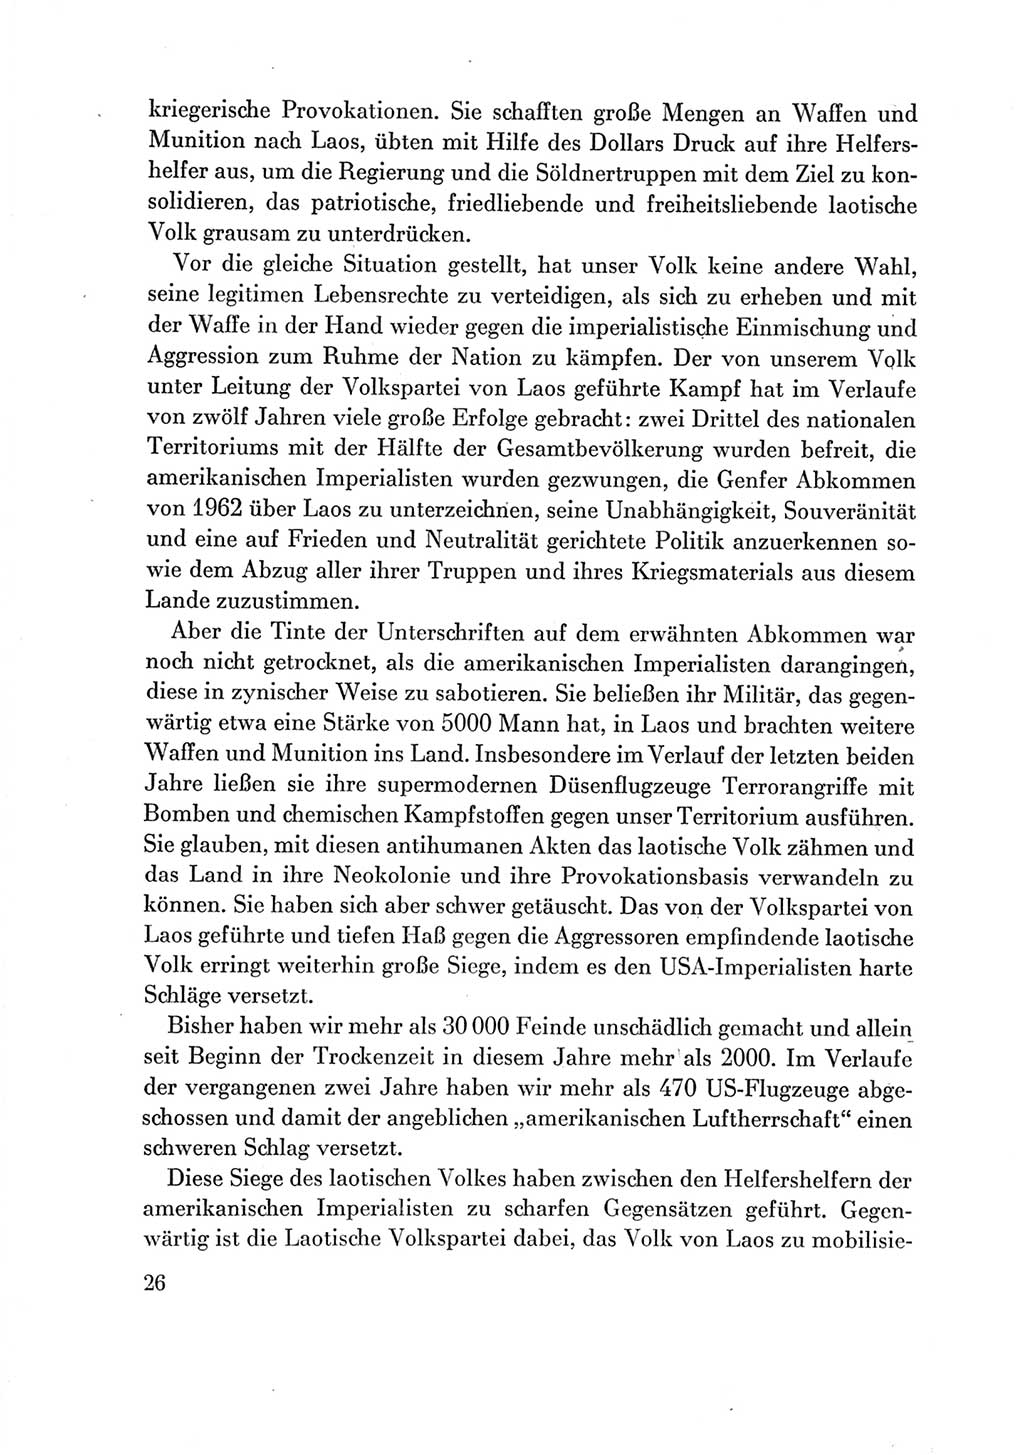 Protokoll der Verhandlungen des Ⅶ. Parteitages der Sozialistischen Einheitspartei Deutschlands (SED) [Deutsche Demokratische Republik (DDR)] 1967, Band Ⅲ, Seite 26 (Prot. Verh. Ⅶ. PT SED DDR 1967, Bd. Ⅲ, S. 26)